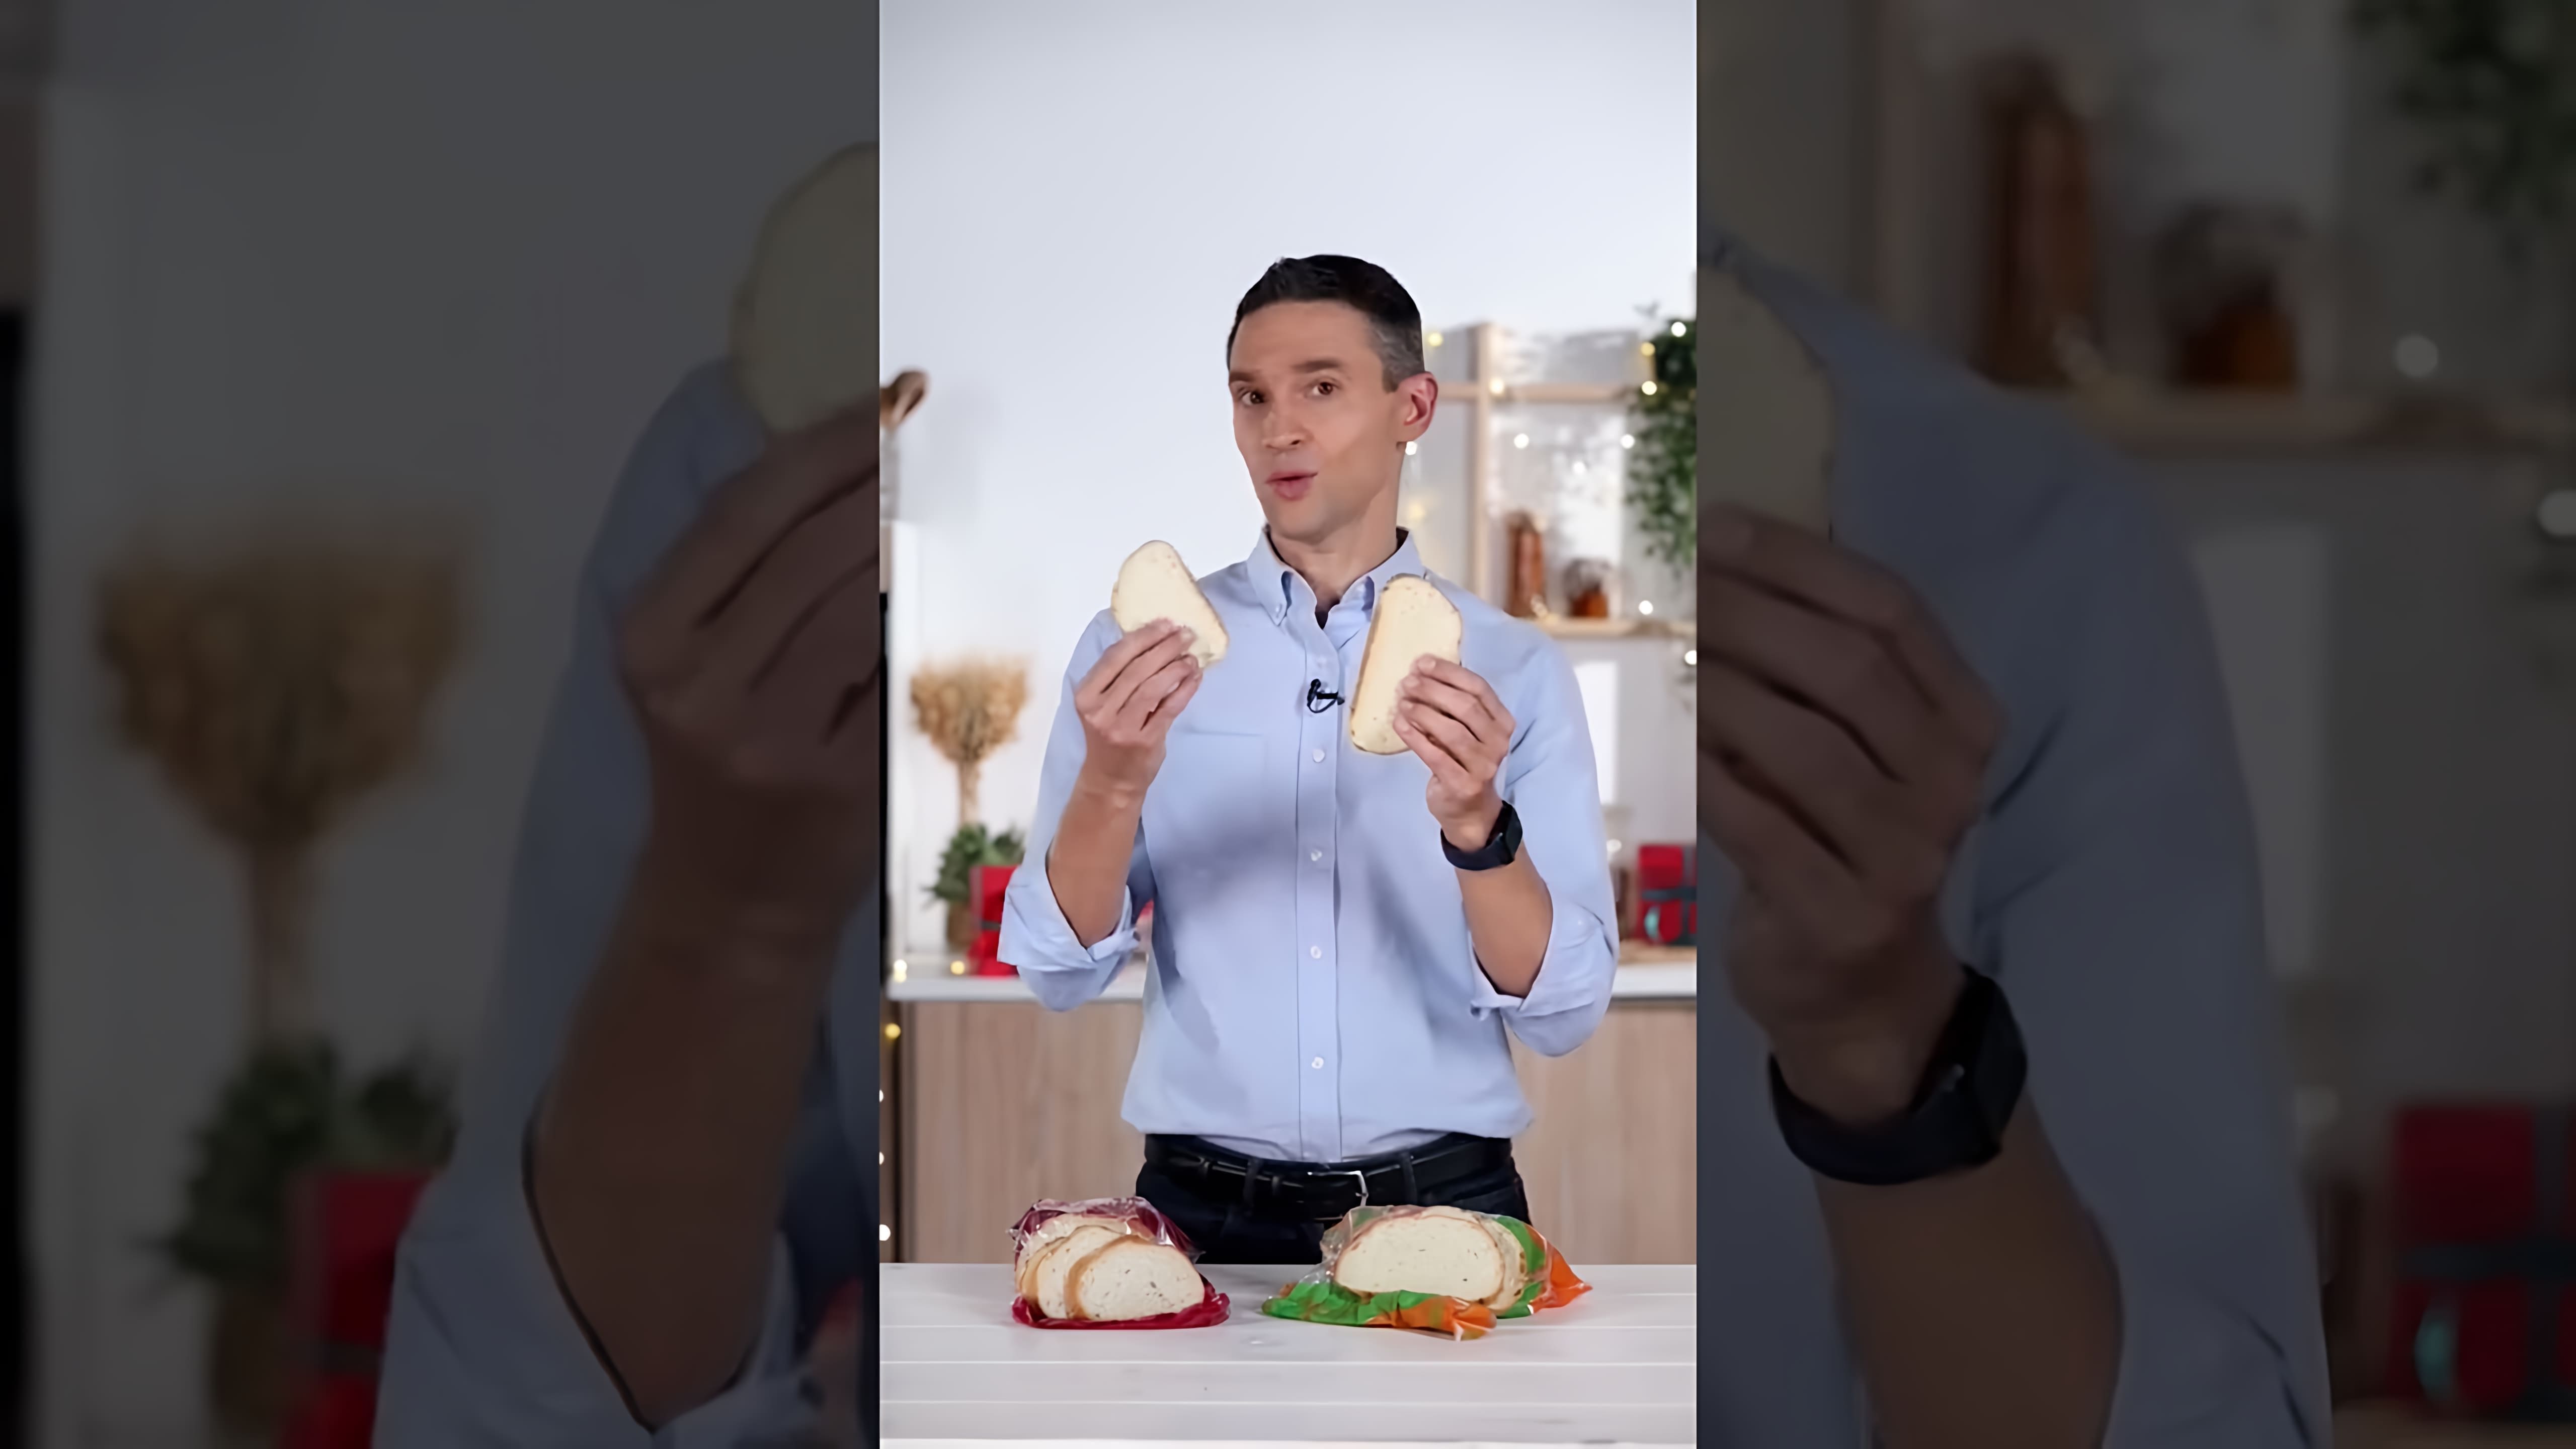 В этом видео рассматривается вопрос о том, полезен ли бездрожжевой хлеб по сравнению с дрожжевым